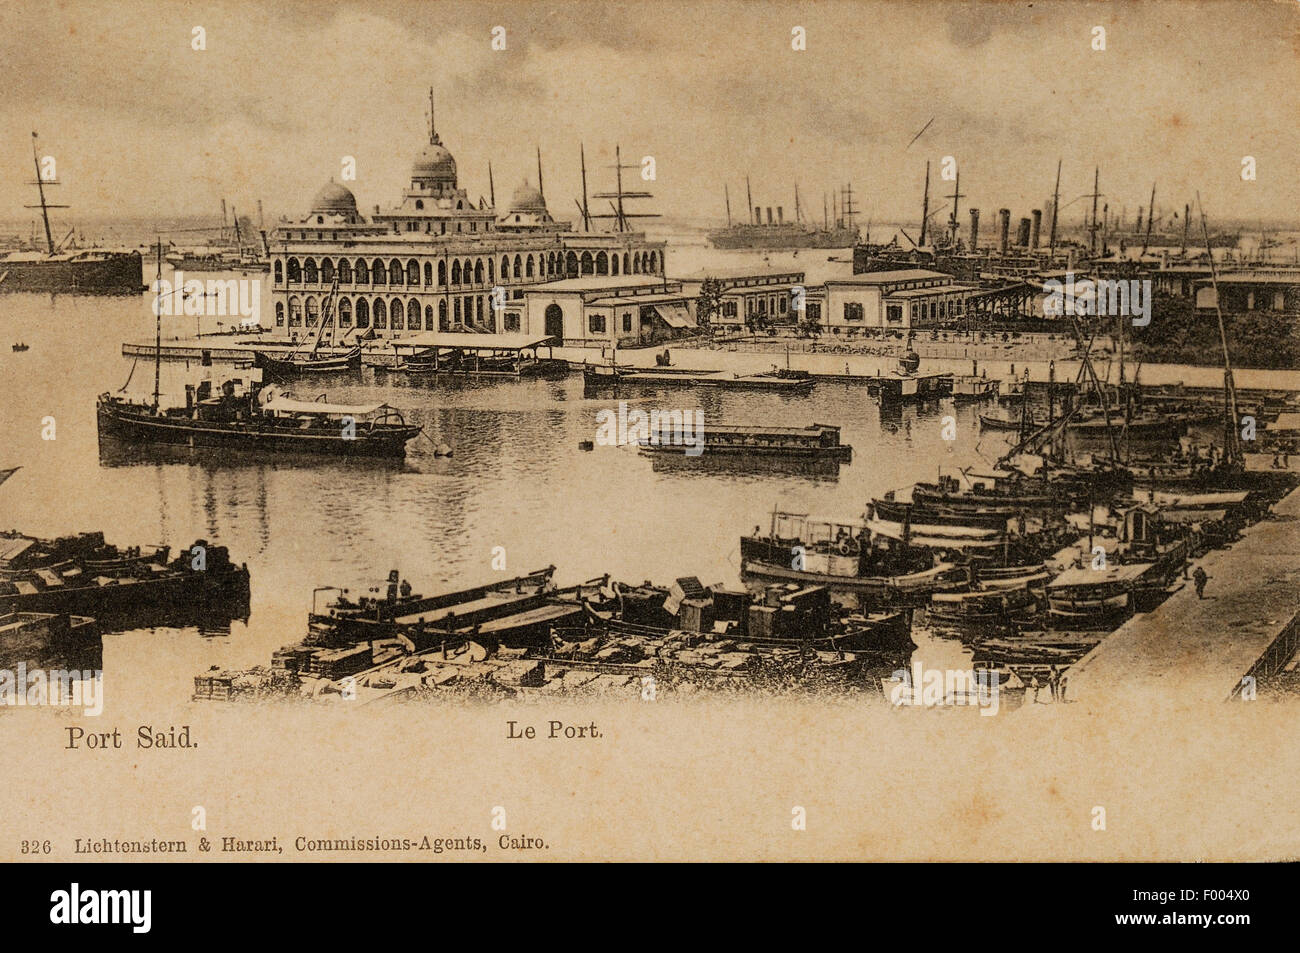 Port Said, Ägypten - 1900 s - eine Postkarte von der Suez-Kanal-Stadt an der Mündung des Suez-Kanals am Mittelmeer, ein Blick auf den Hafen.   COPYRIGHT FOTOSAMMLUNG VON BARRY IVERSON Stockfoto